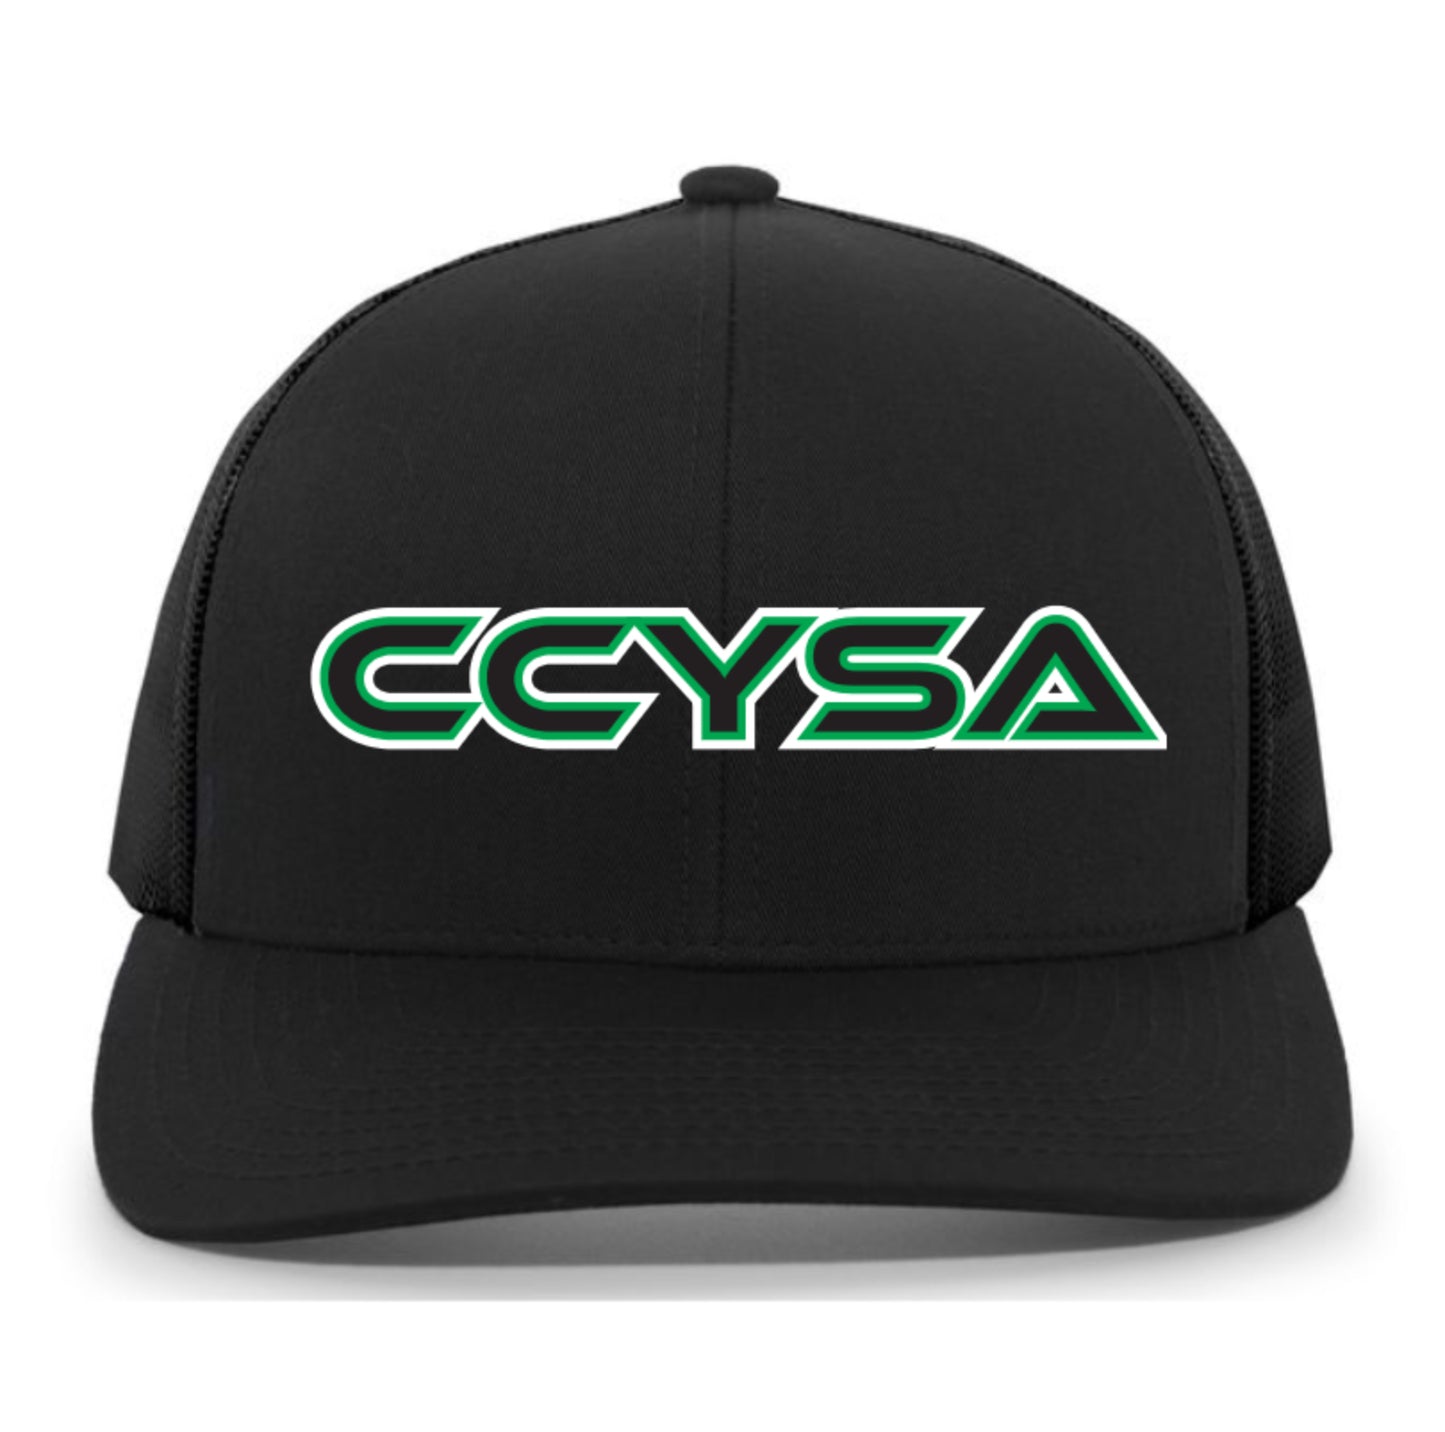 “CCYSA” Trucker Hat